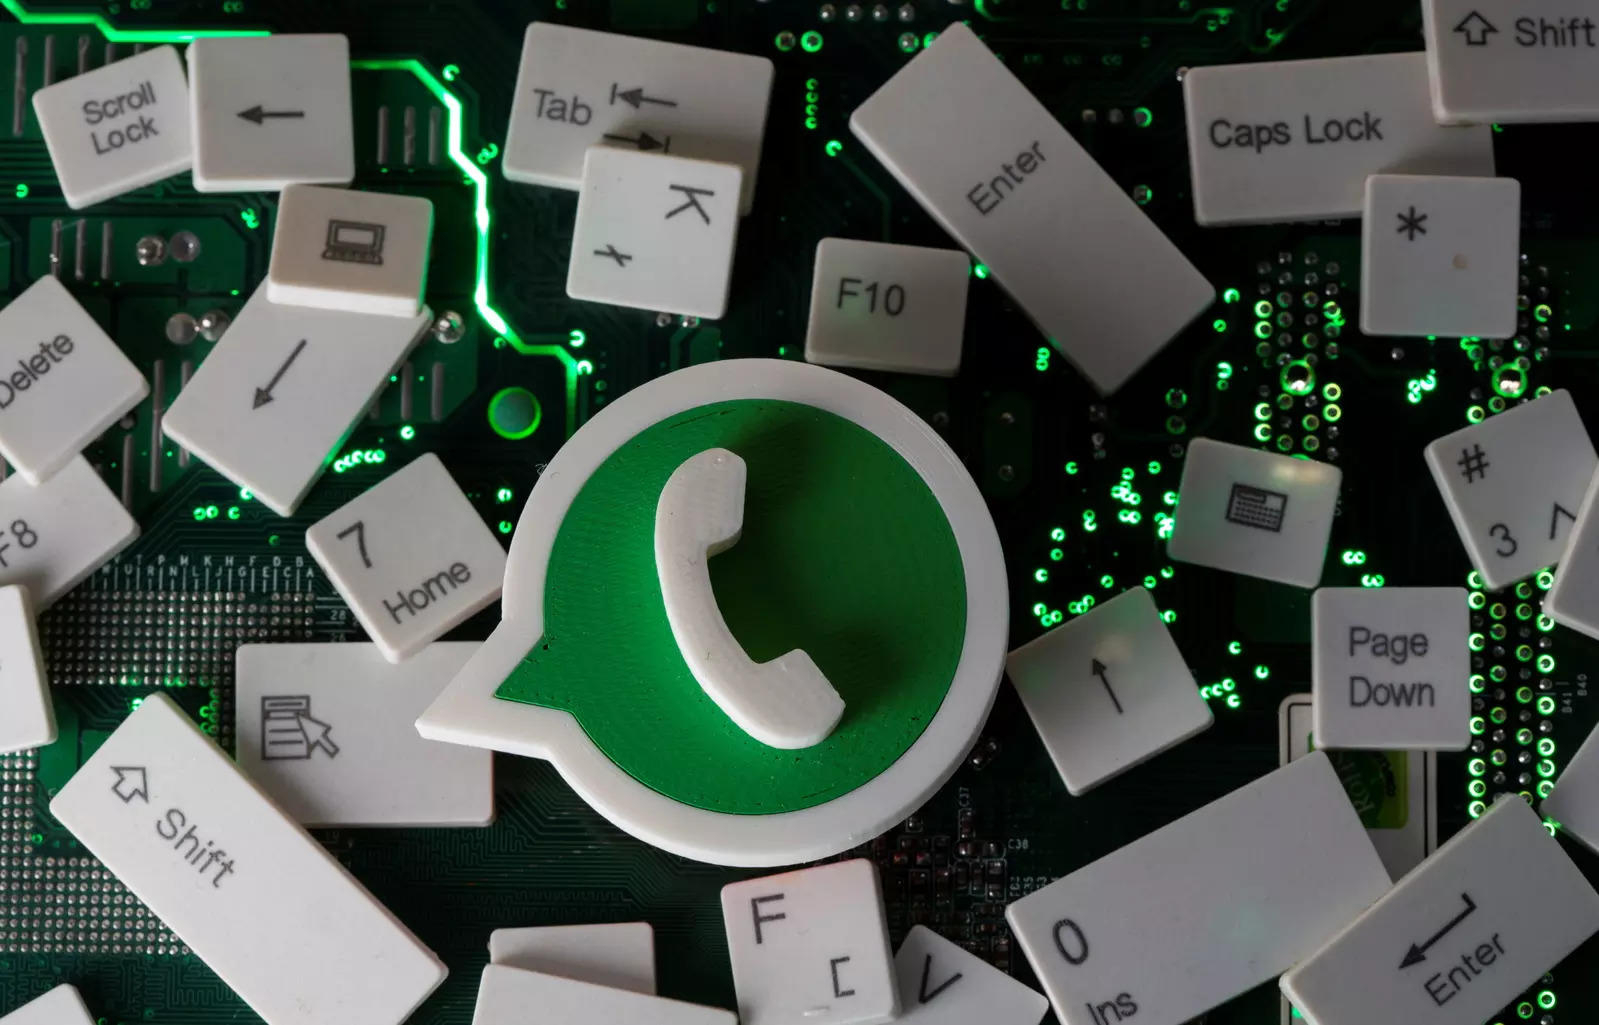 "WhatsApp" istifadəçilərinin NƏZƏRİNƏ: Çoxdan gözlənilən funksiya işə salındı